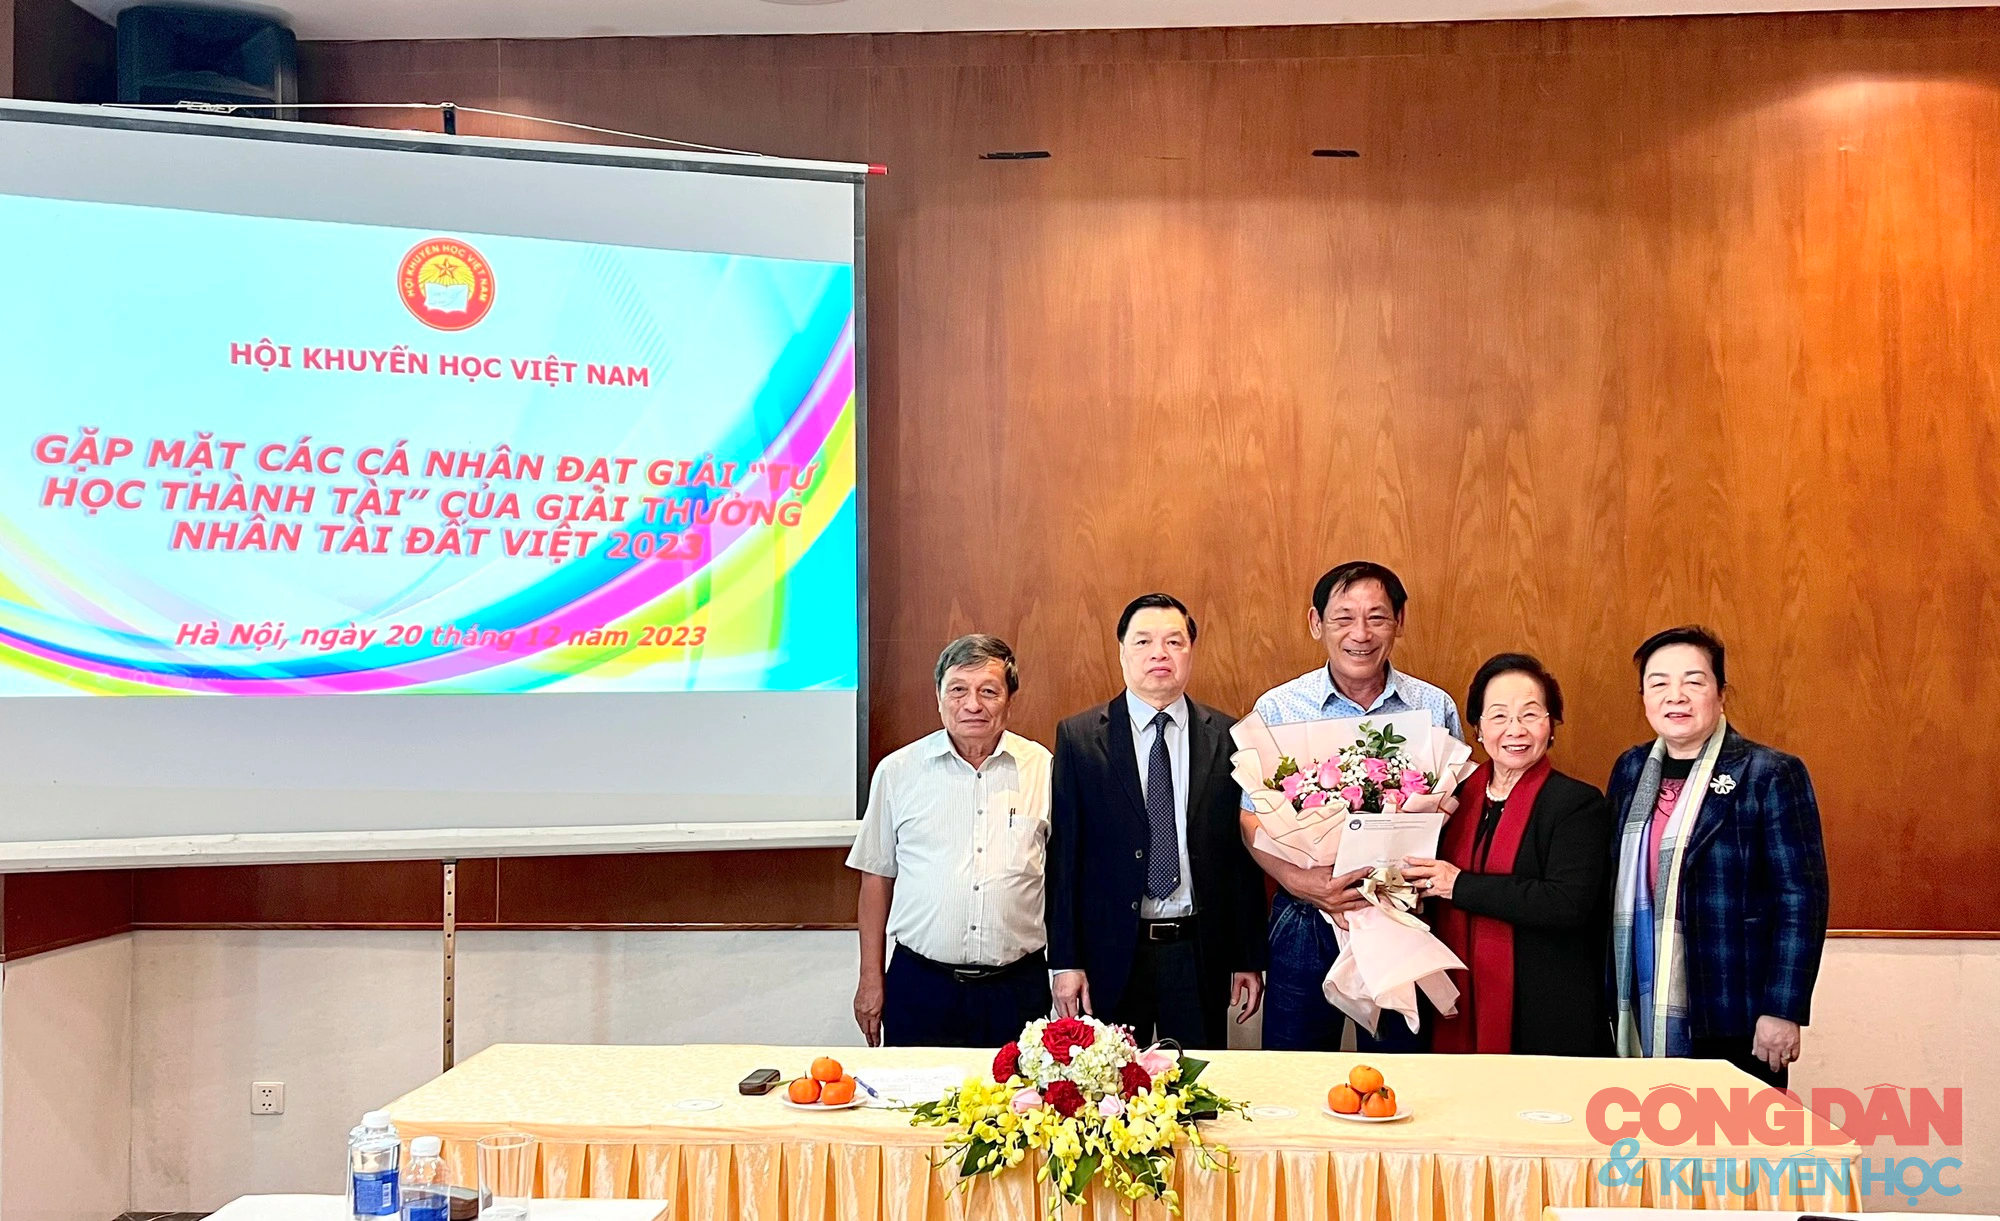 Gặp mặt các cá nhân đạt giải Tự học thành tài của Giải thưởng Nhân tài Đất Việt 2023- Ảnh 6.